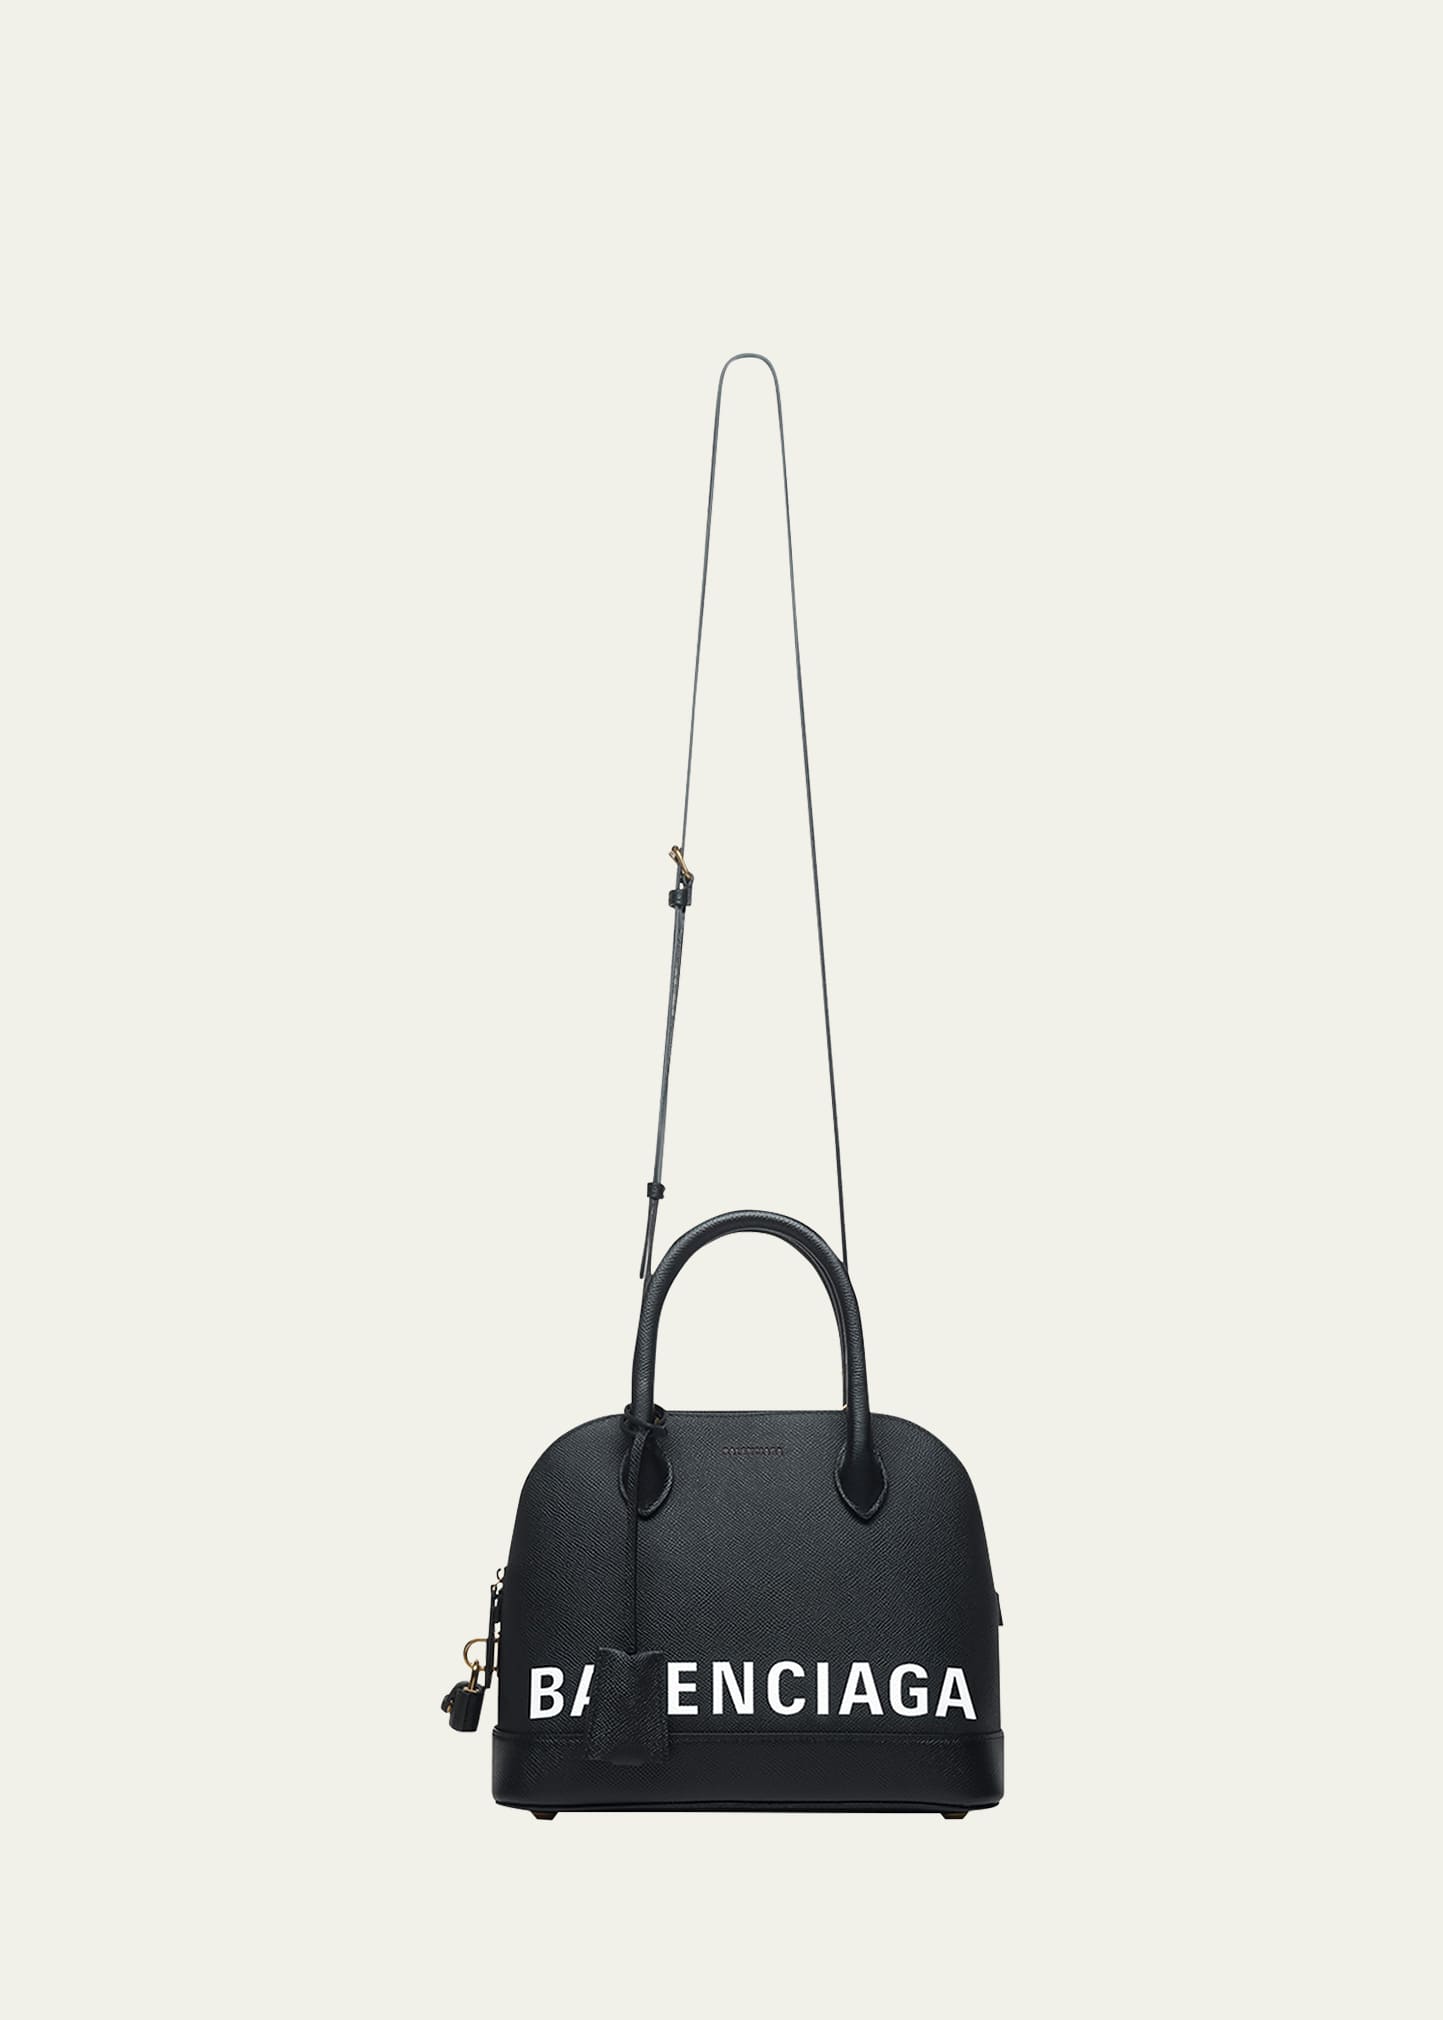 Balenciaga XXS ville bag #balenciaga #summer #luxury 